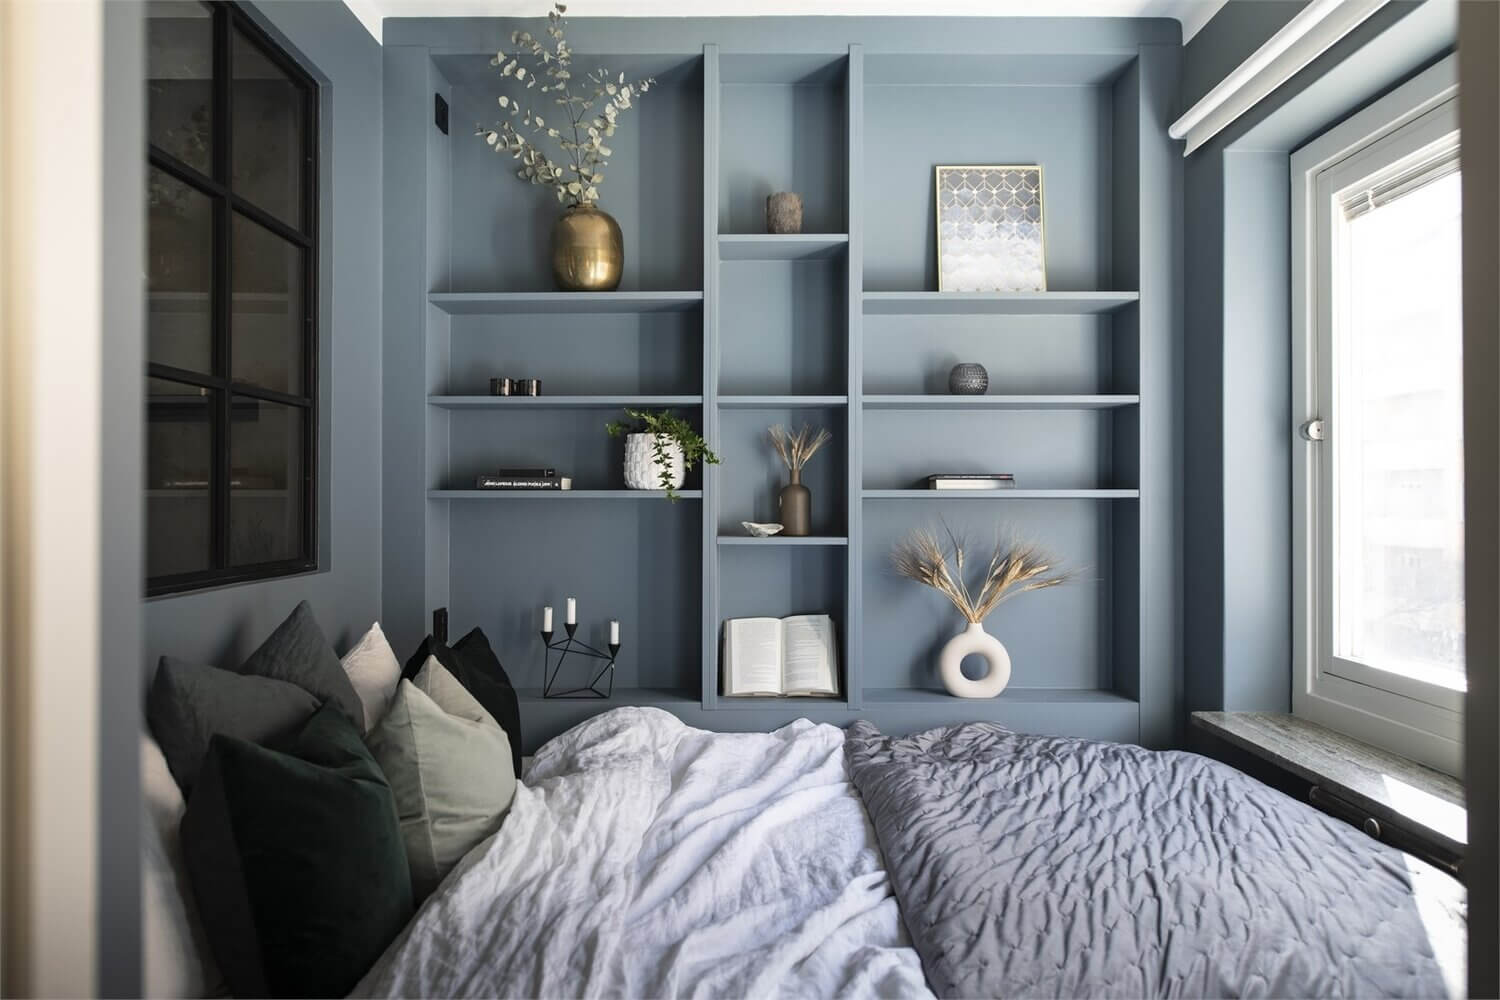 Những ý tưởng thiết kế biến căn phòng ngủ trở nên hoàn hảo bất chấp diện tích nhỏ hẹp - Ảnh 8.